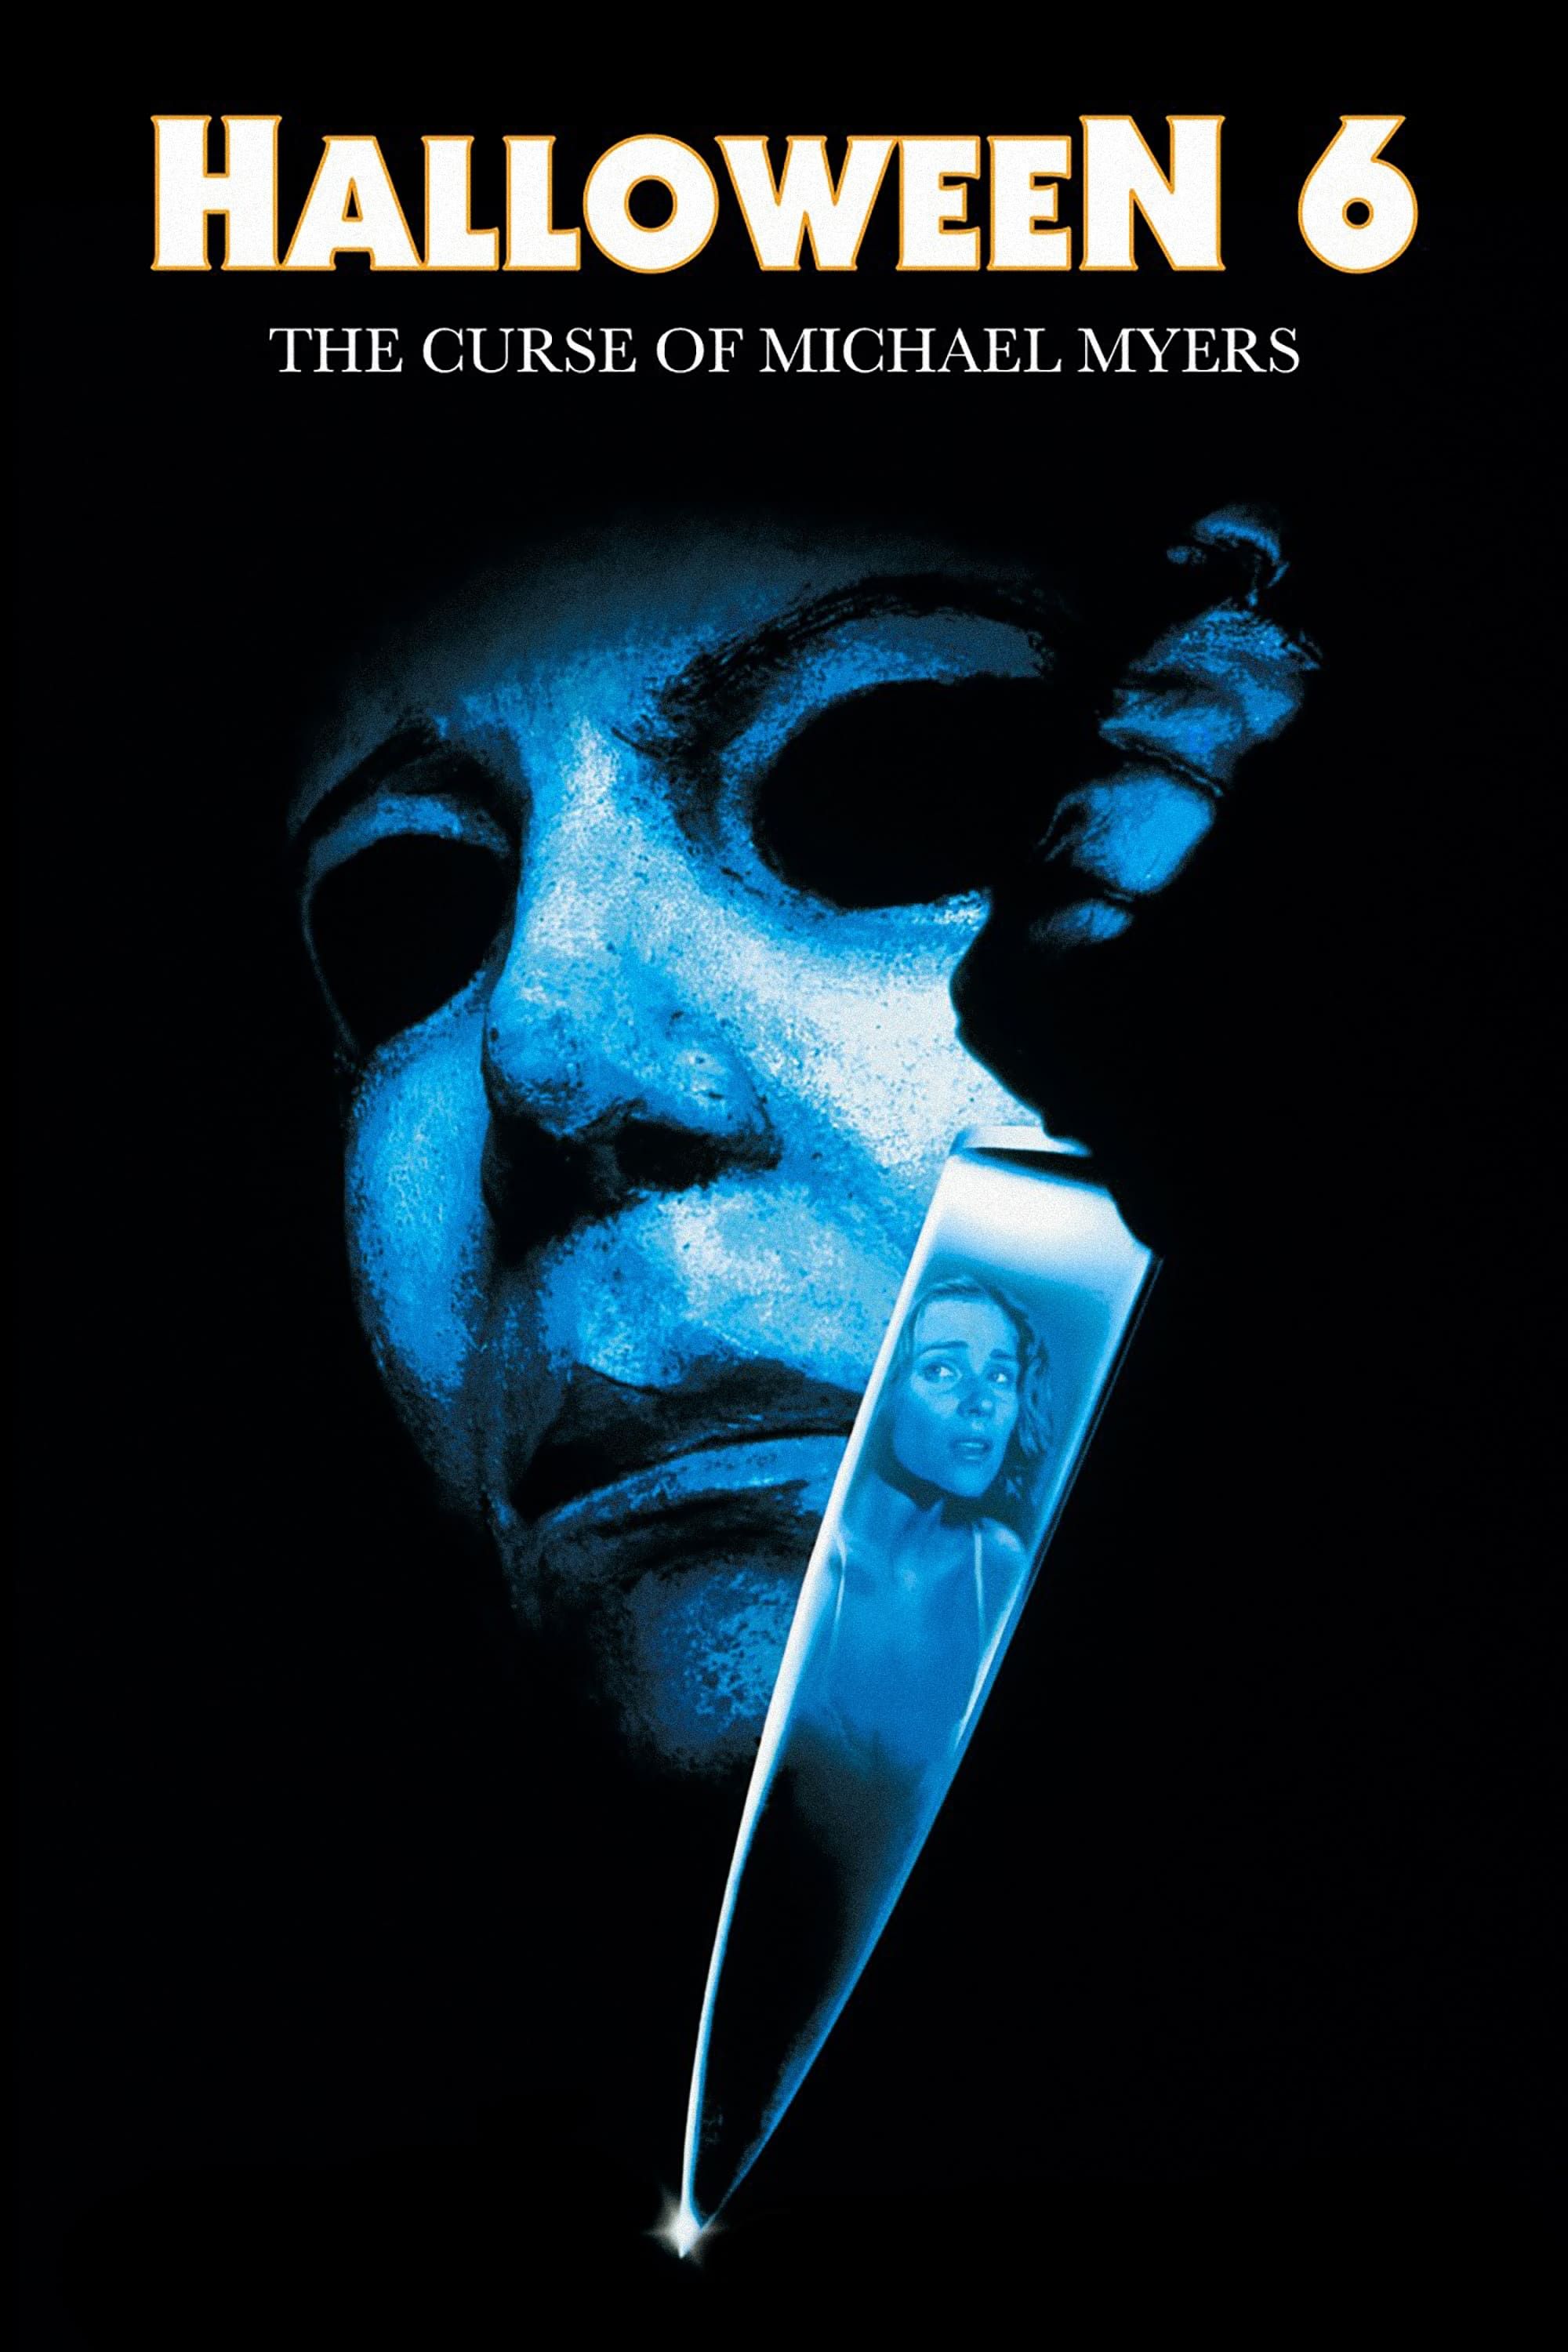 Halloween: La maldición de Michael Myers